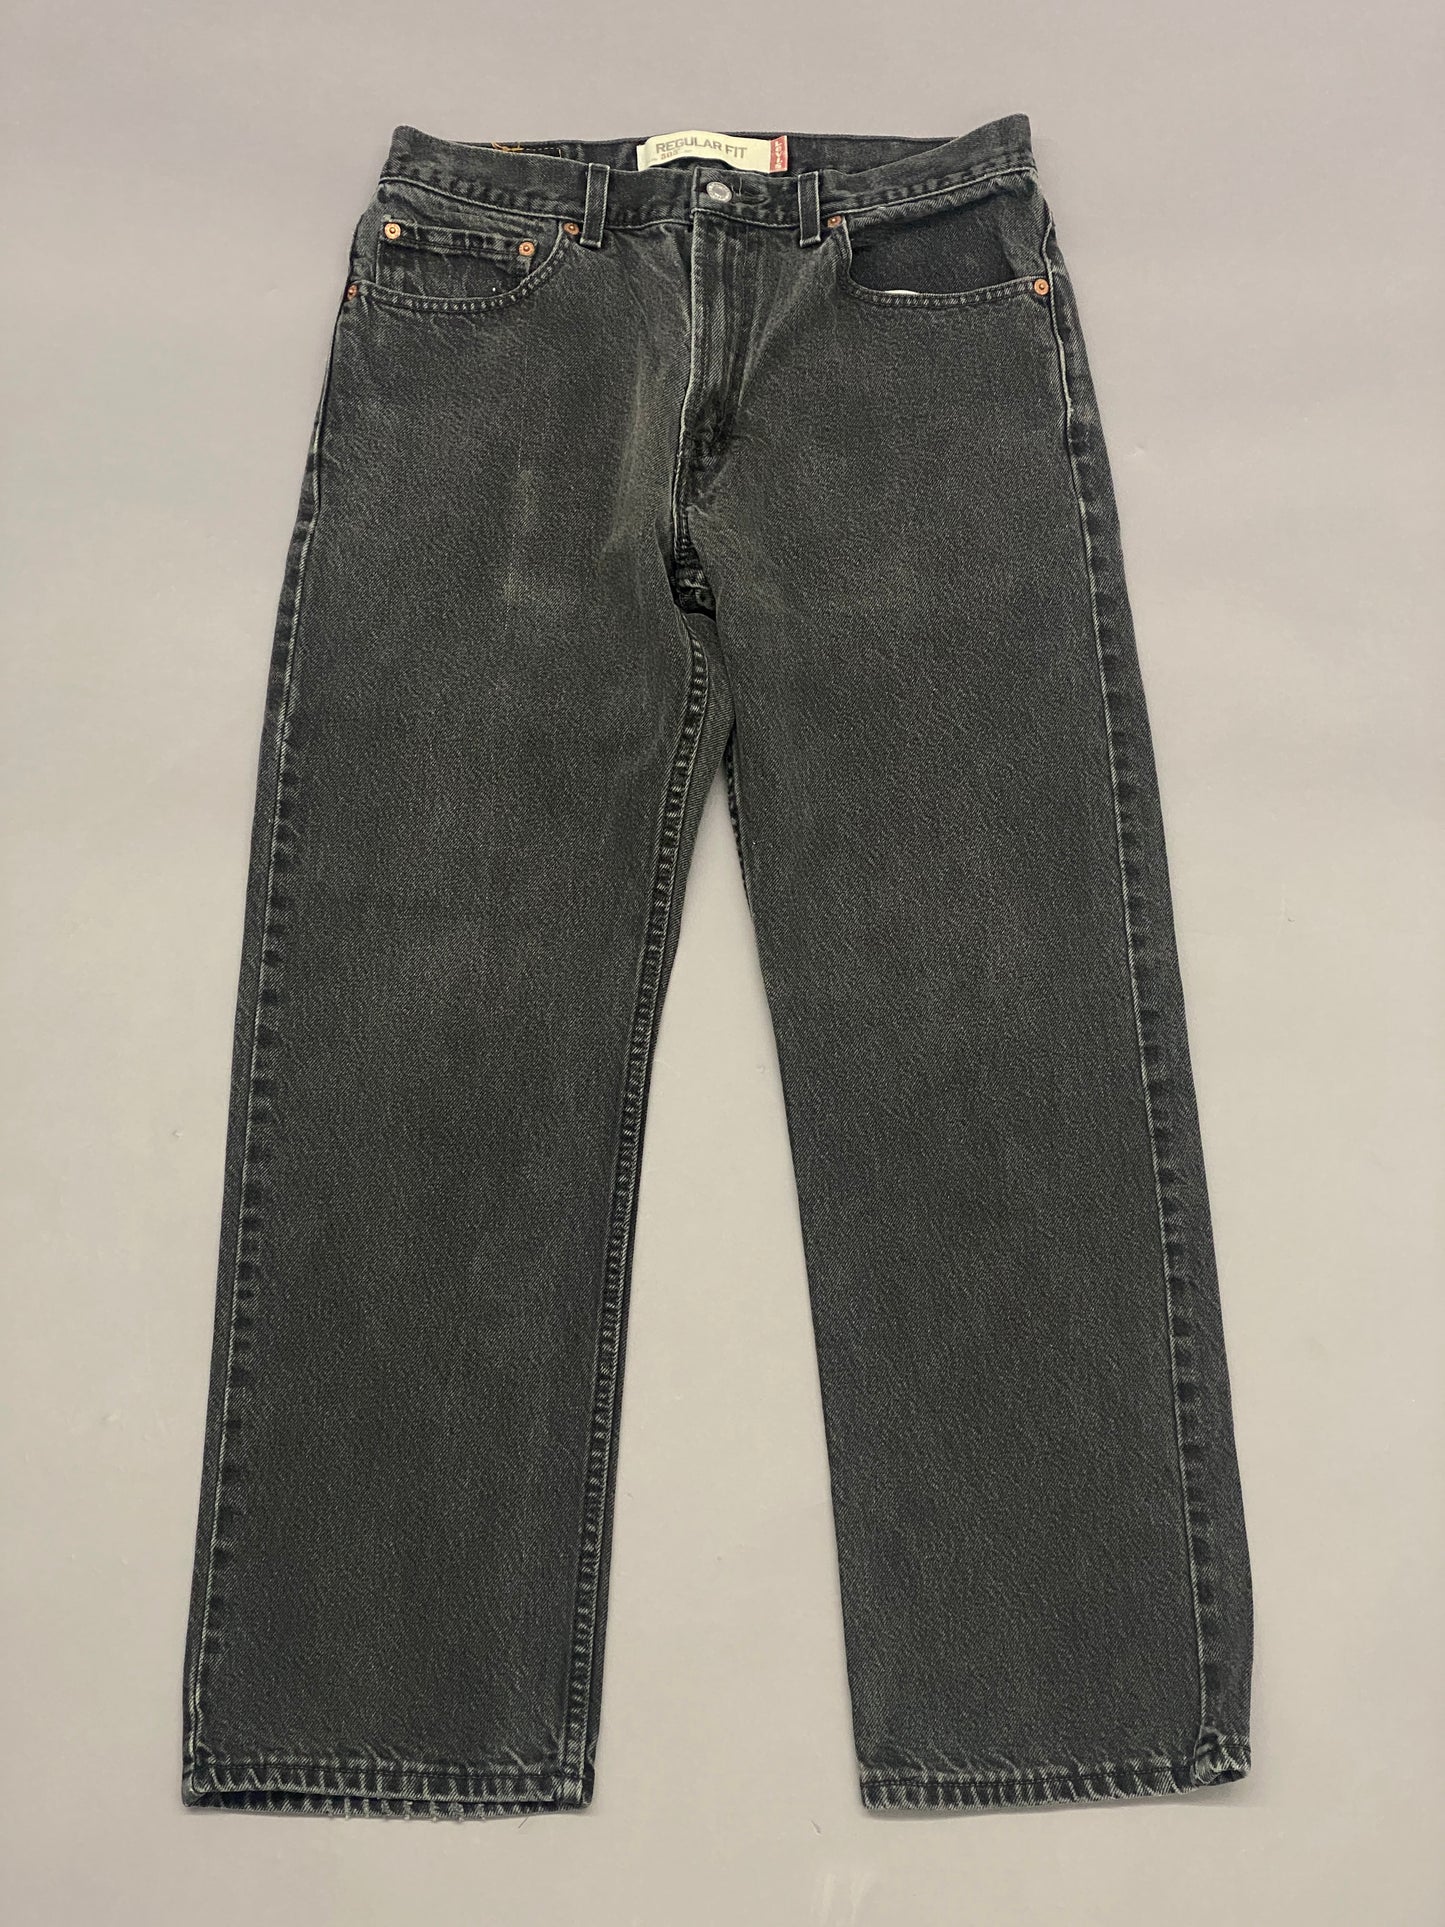 Jeans Levis 505 - 33 x 30